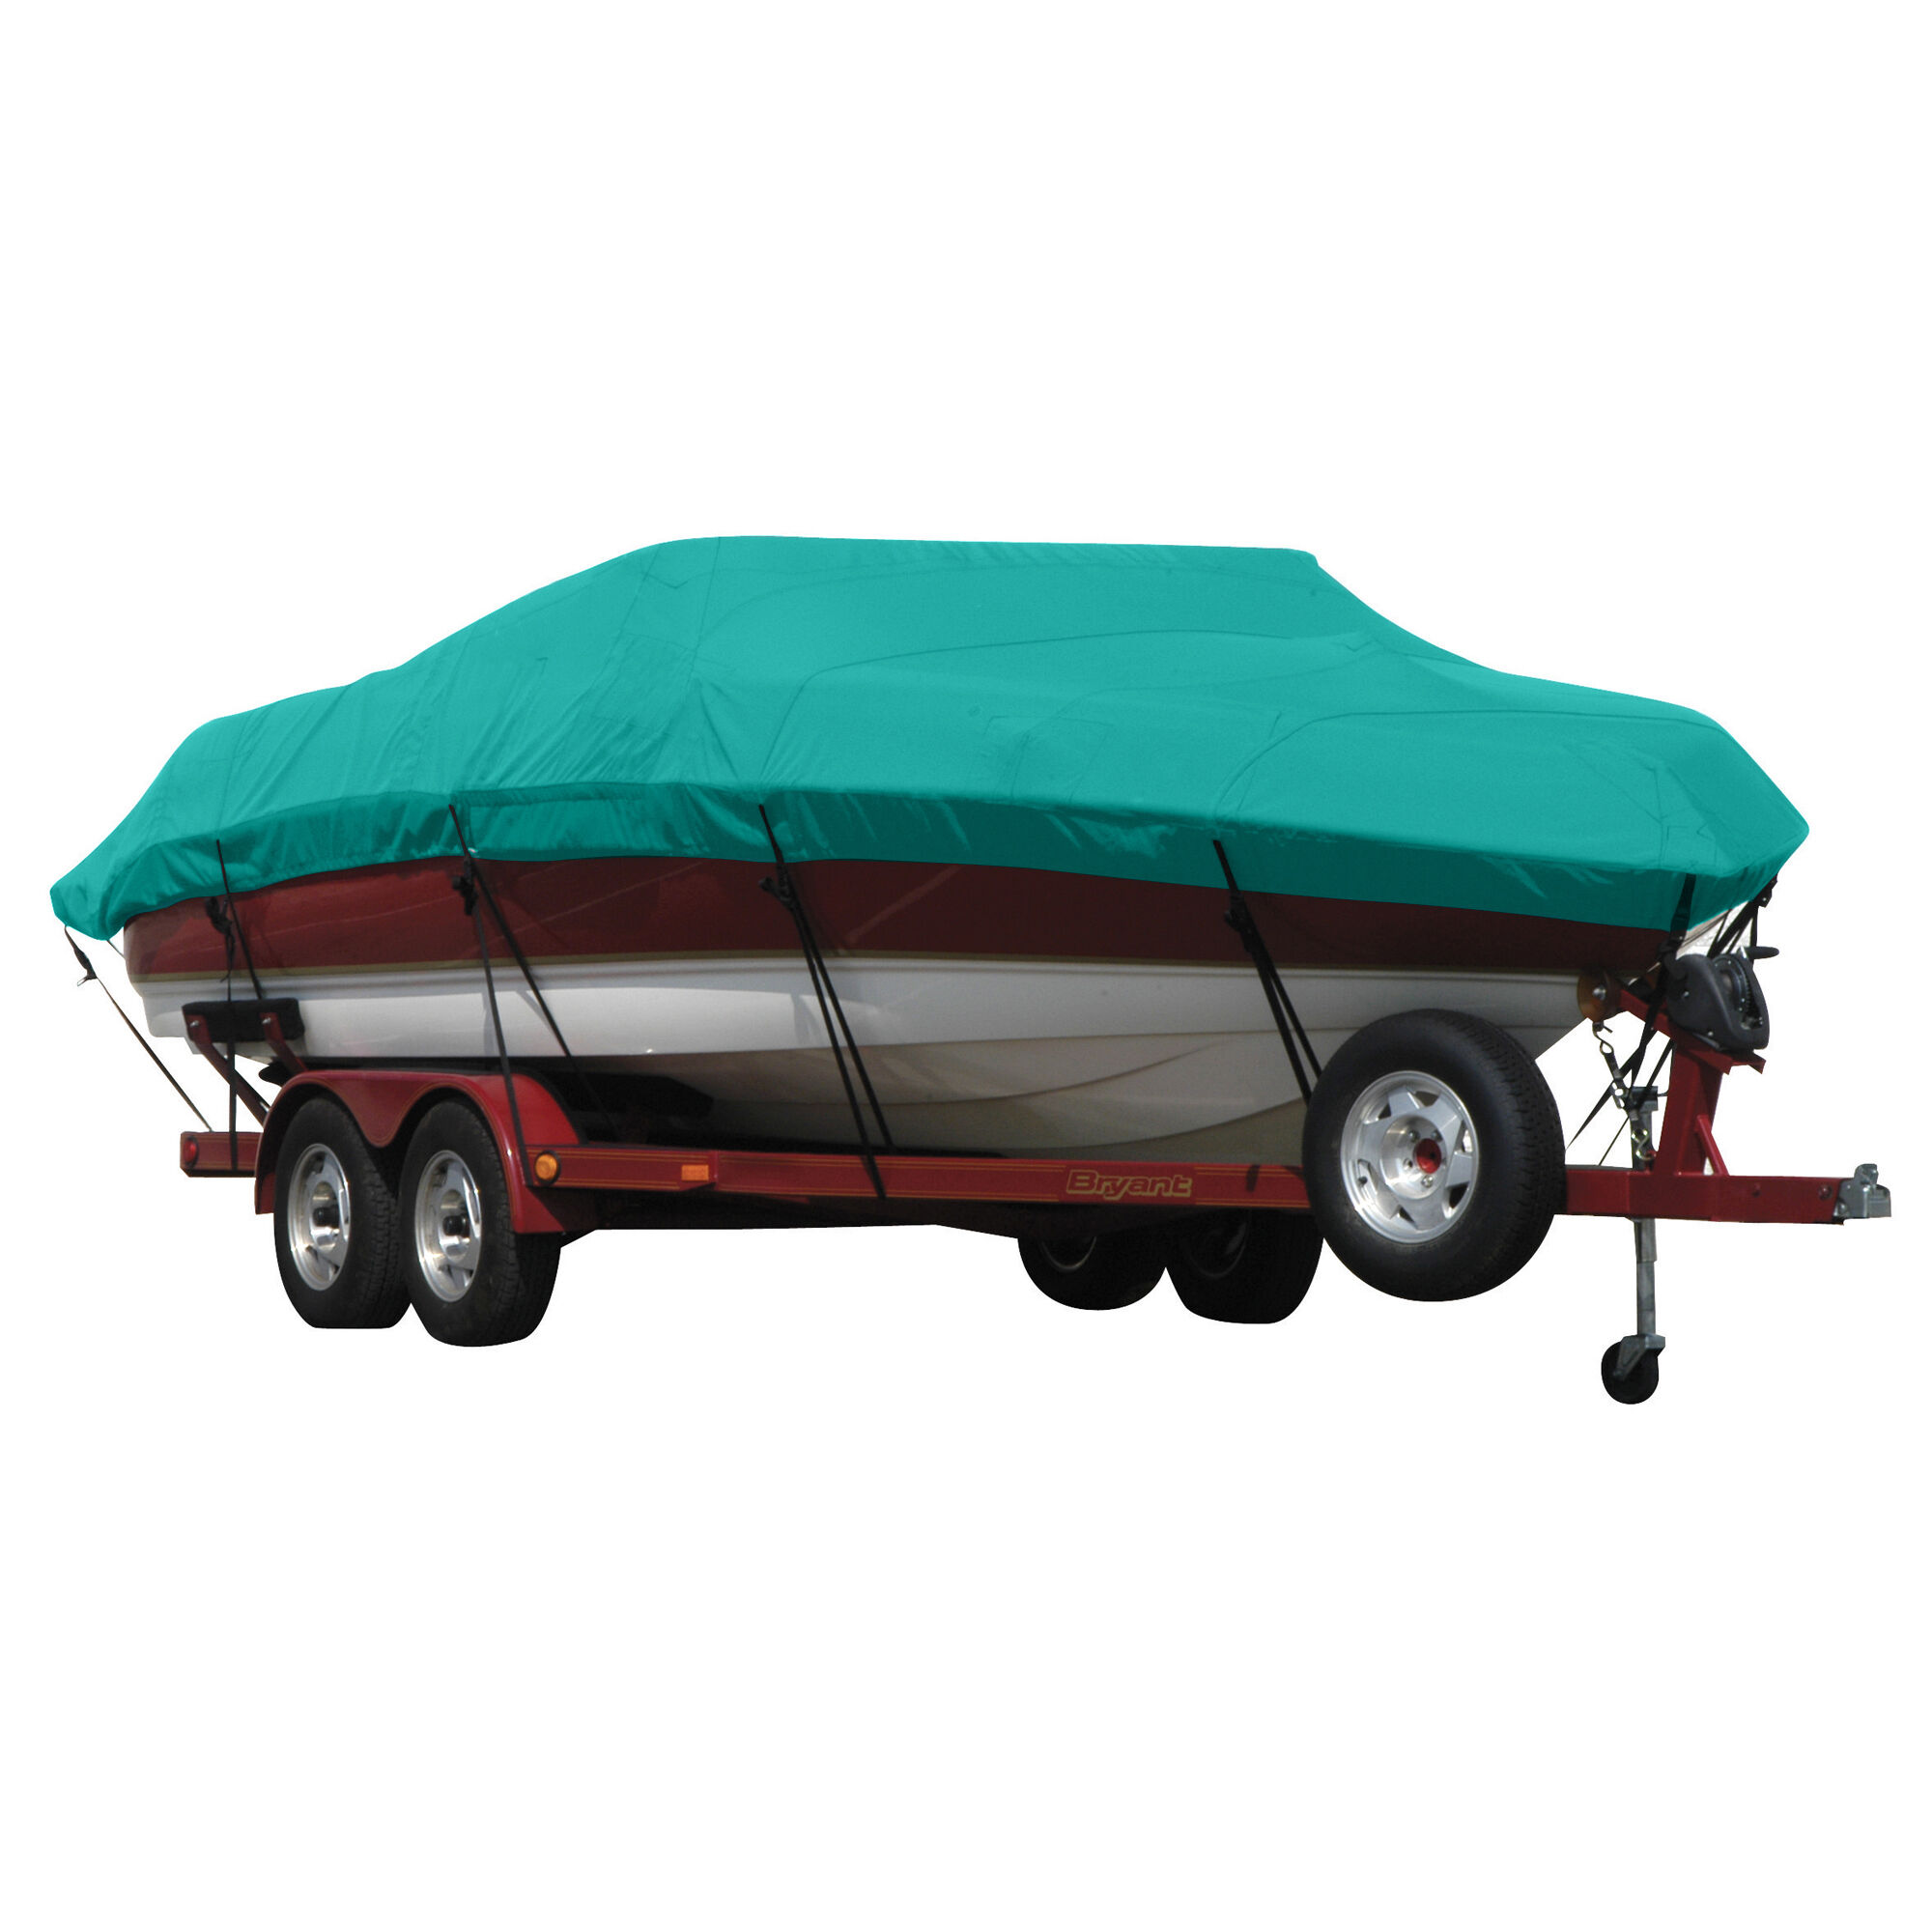 Covermate Exact Fit Sunbrella Boat Cover for Mariah Shabah 200 Shabah 200 Bowrider I/O. Persian Green